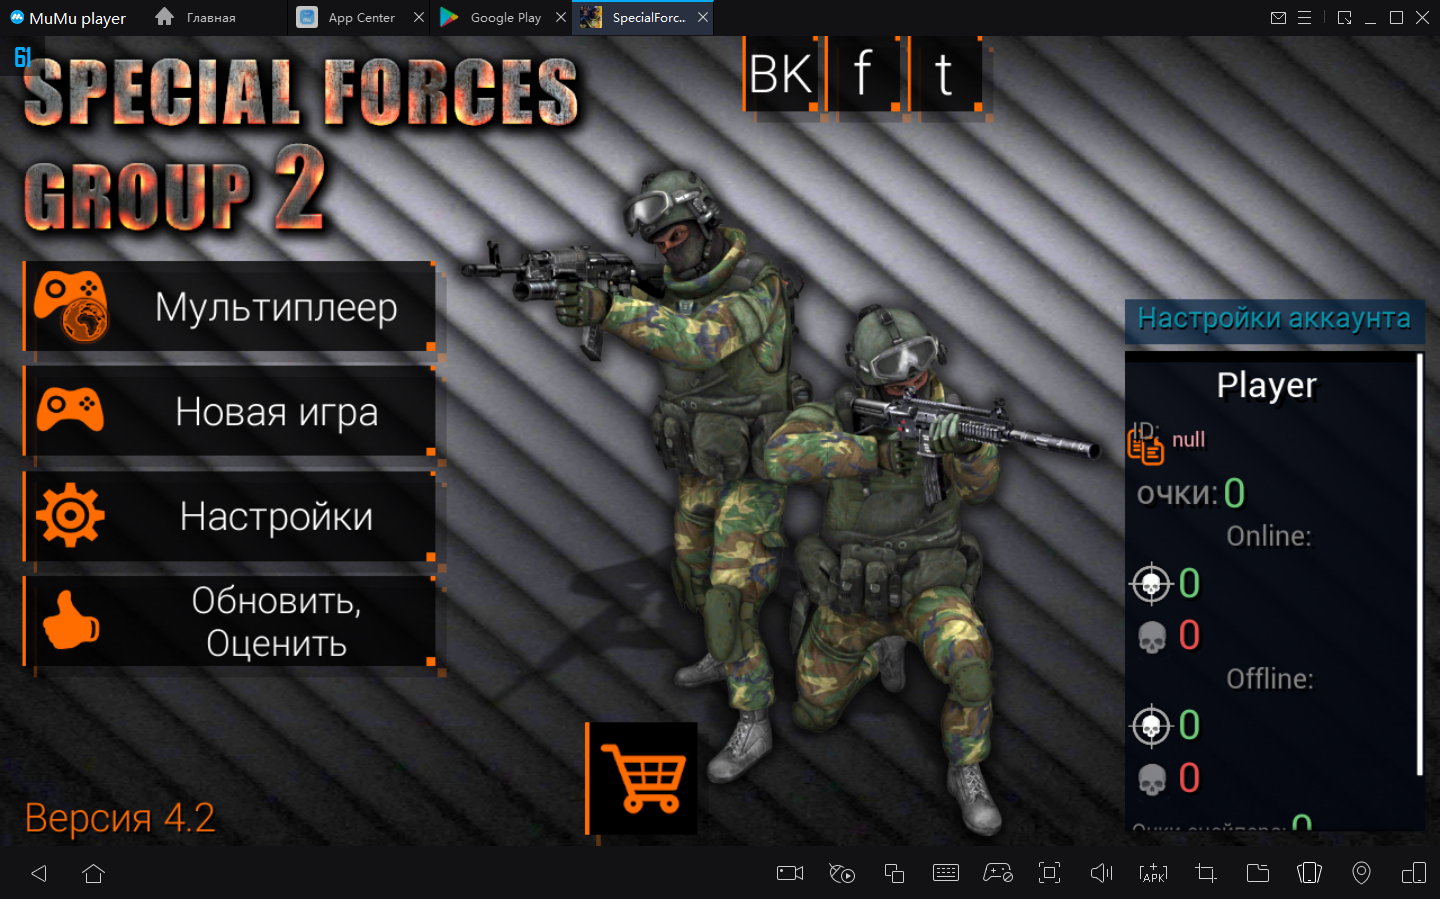 Версия 2.2 3. Специал Форс Гроуп 2. Игры Контра страйк Special Forces Group 2. Игра специал форсес Гроуп. Special Forces Group 2.2 версия.